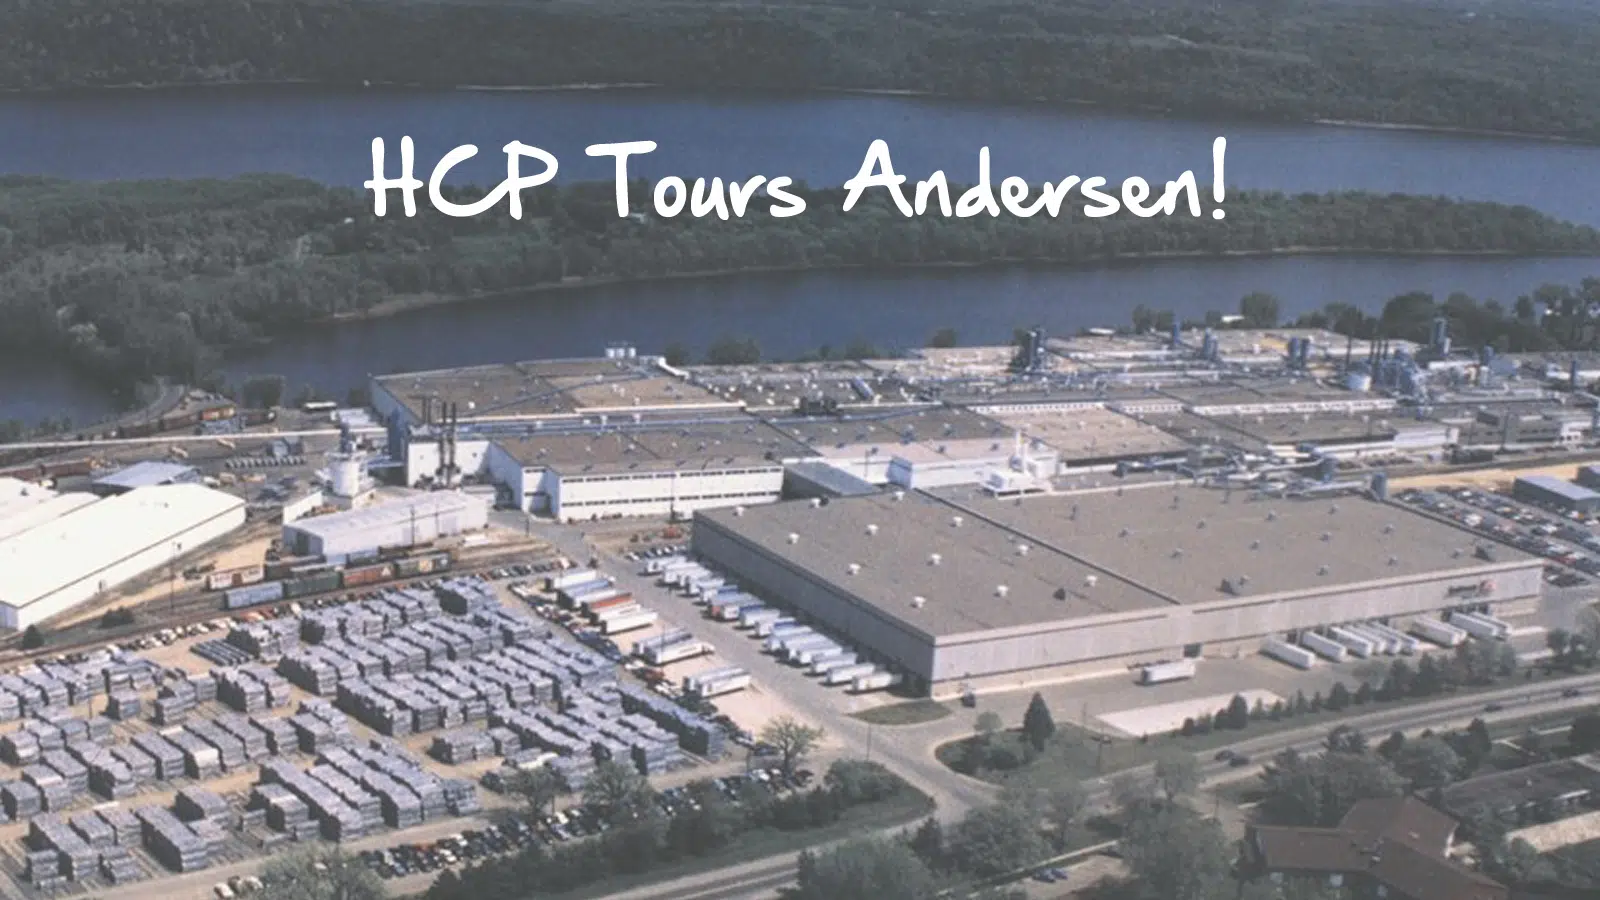 HCP Tours Andersen